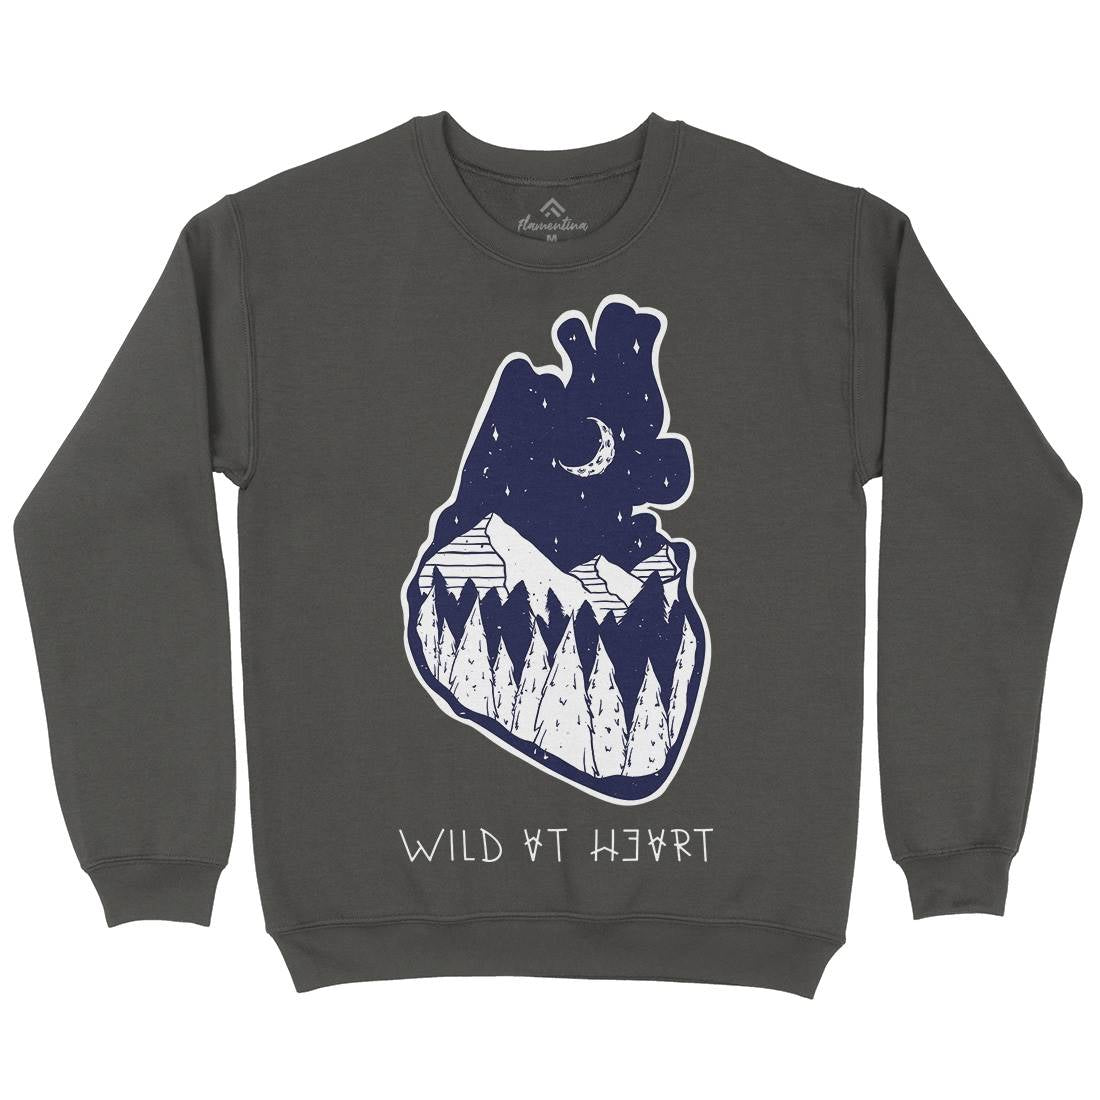 Wild At Heart Kids Crew Neck Sweatshirt Nature D498